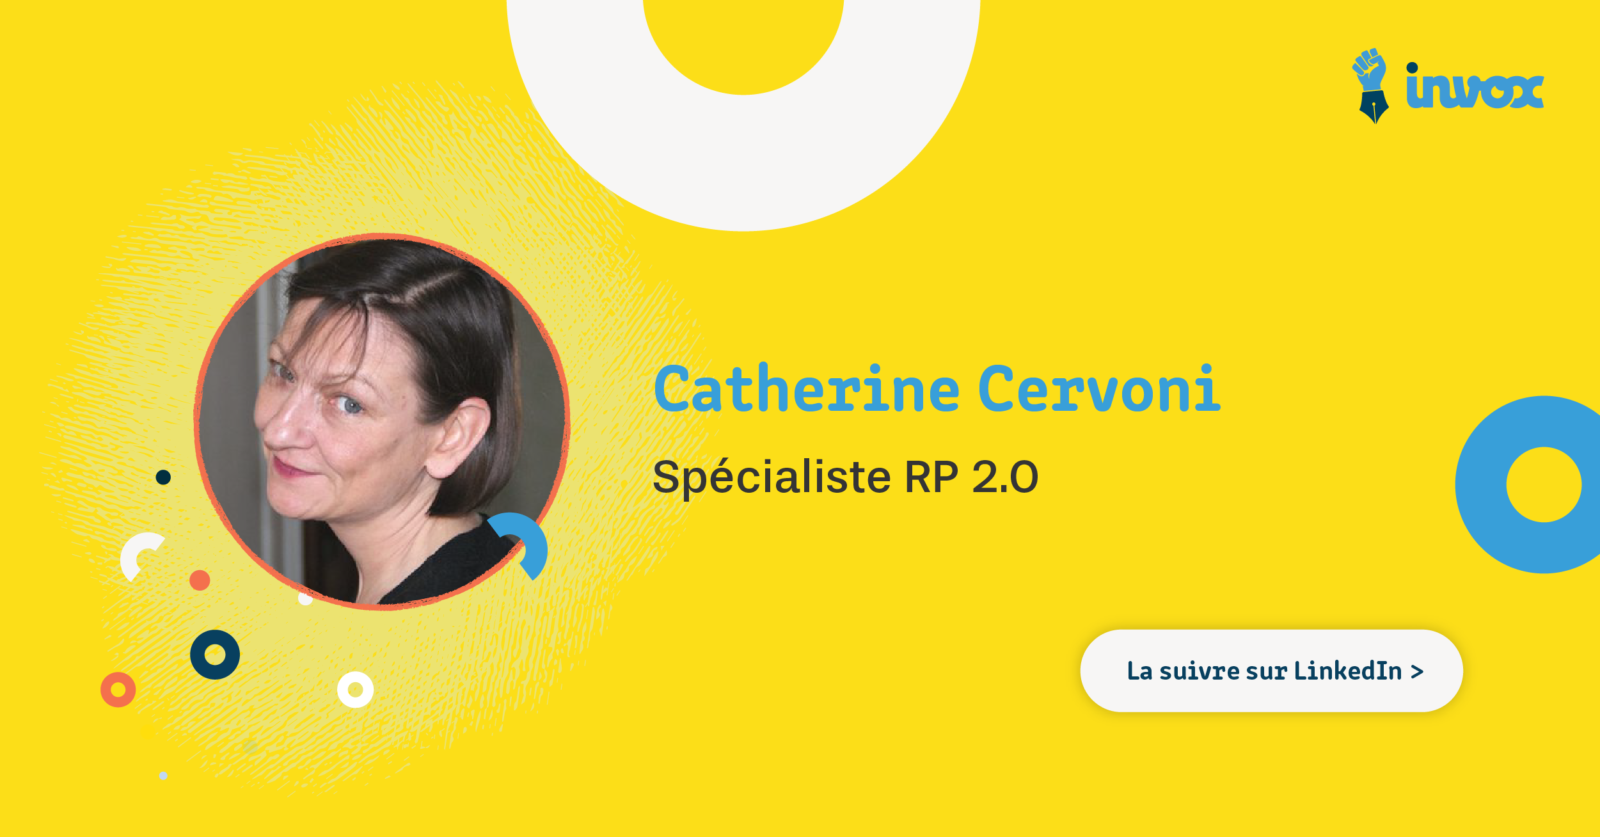 Catherine Cervoni